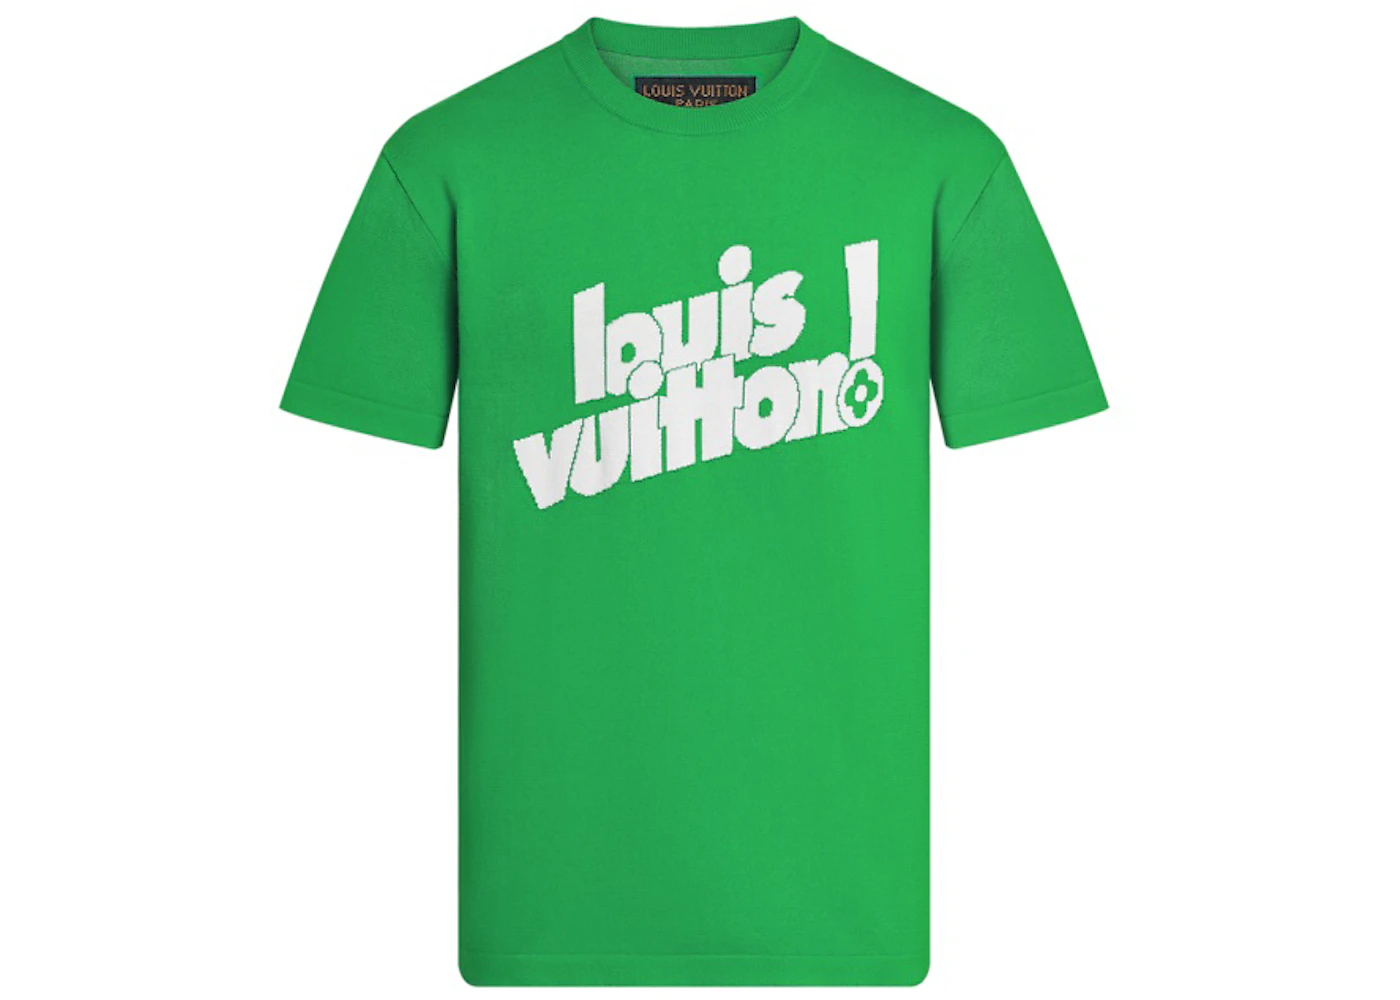 Louis Vuitton Everyday LV Crewneck Green